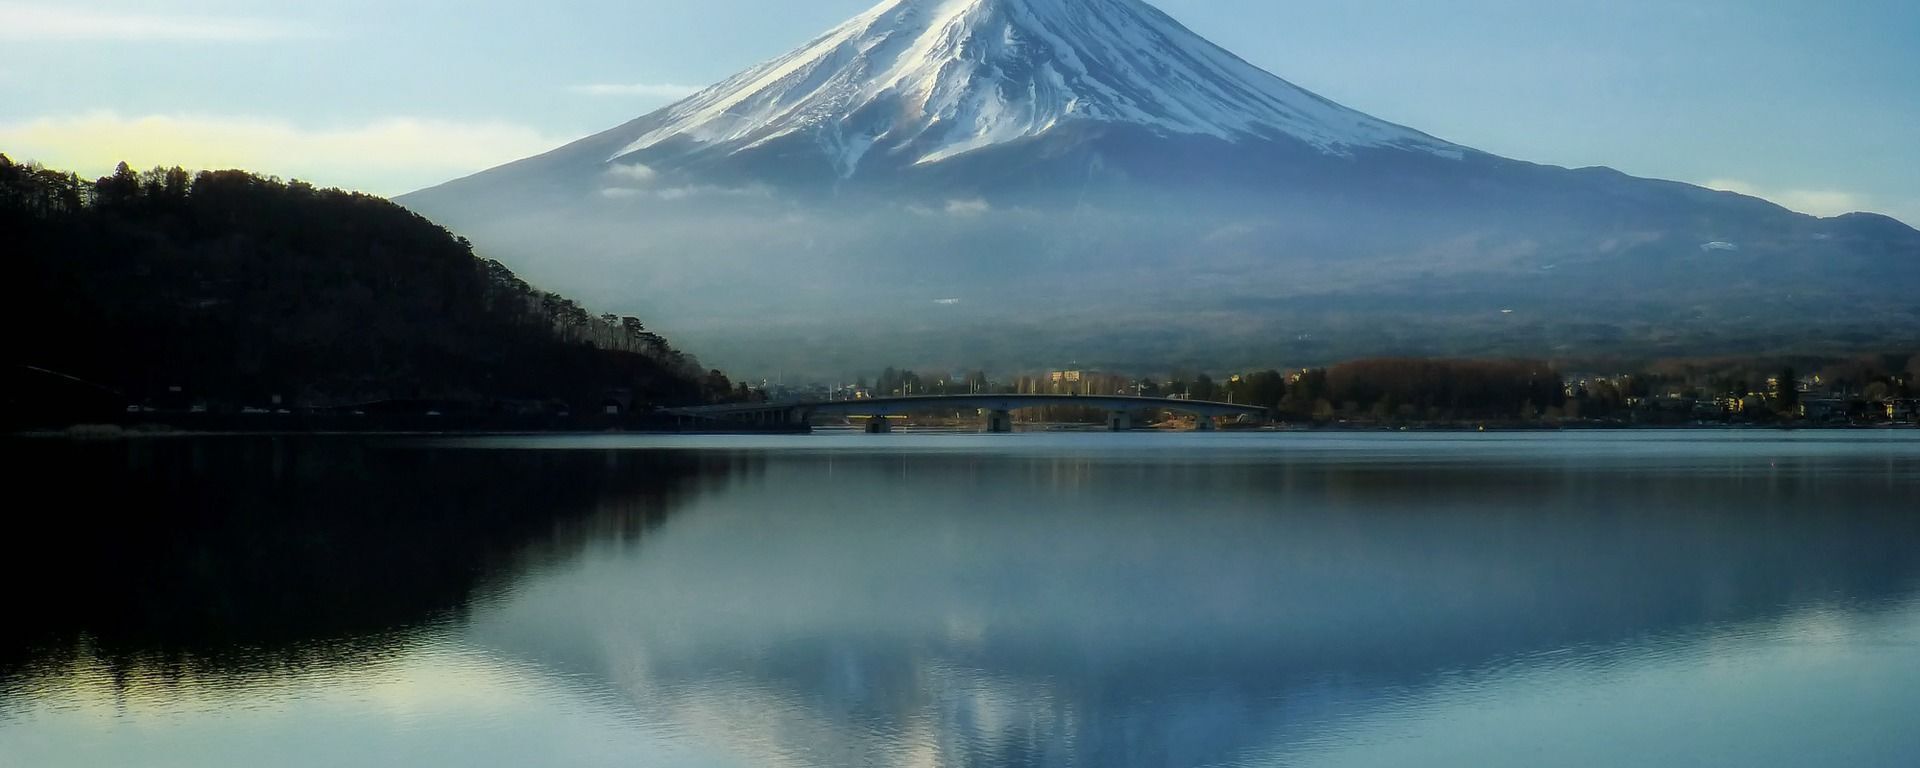 富士山大規模噴火なら首都機能マヒ - Sputnik 日本, 1920, 31.03.2020